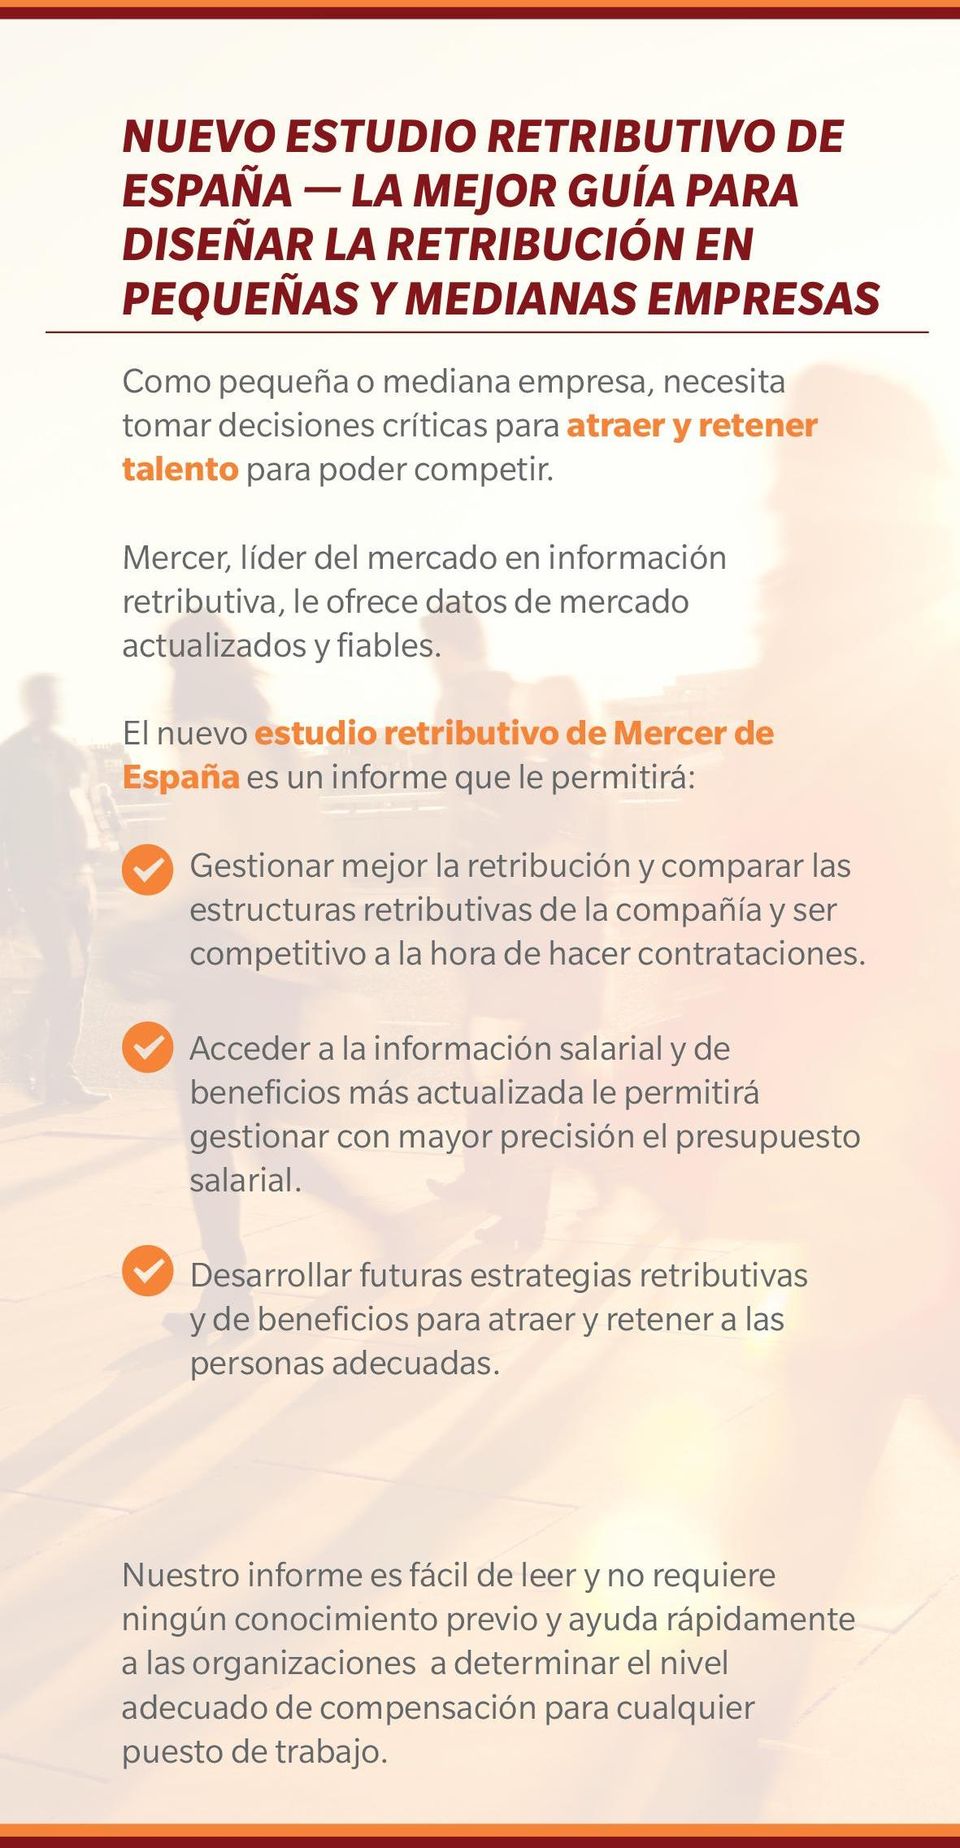 El nuevo estudio retributivo de Mercer de España es un informe que le permitirá: Gestionar mejor la retribución y comparar las estructuras retributivas de la compañía y ser competitivo a la hora de